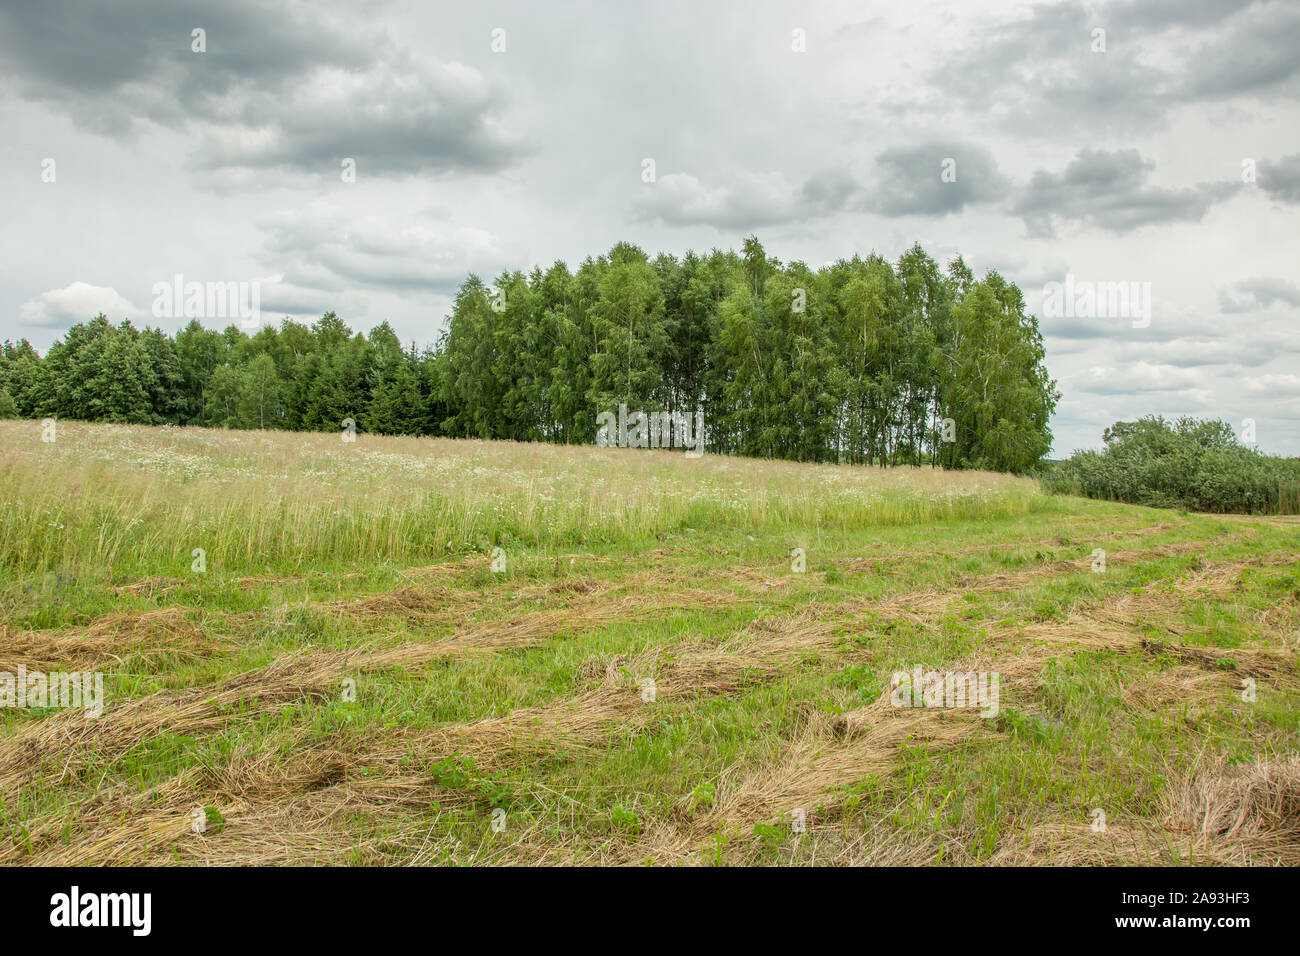 Erba tagliata in un prato, foresta e grigio nuvole nel cielo. Zarzecze, Polonia Foto Stock